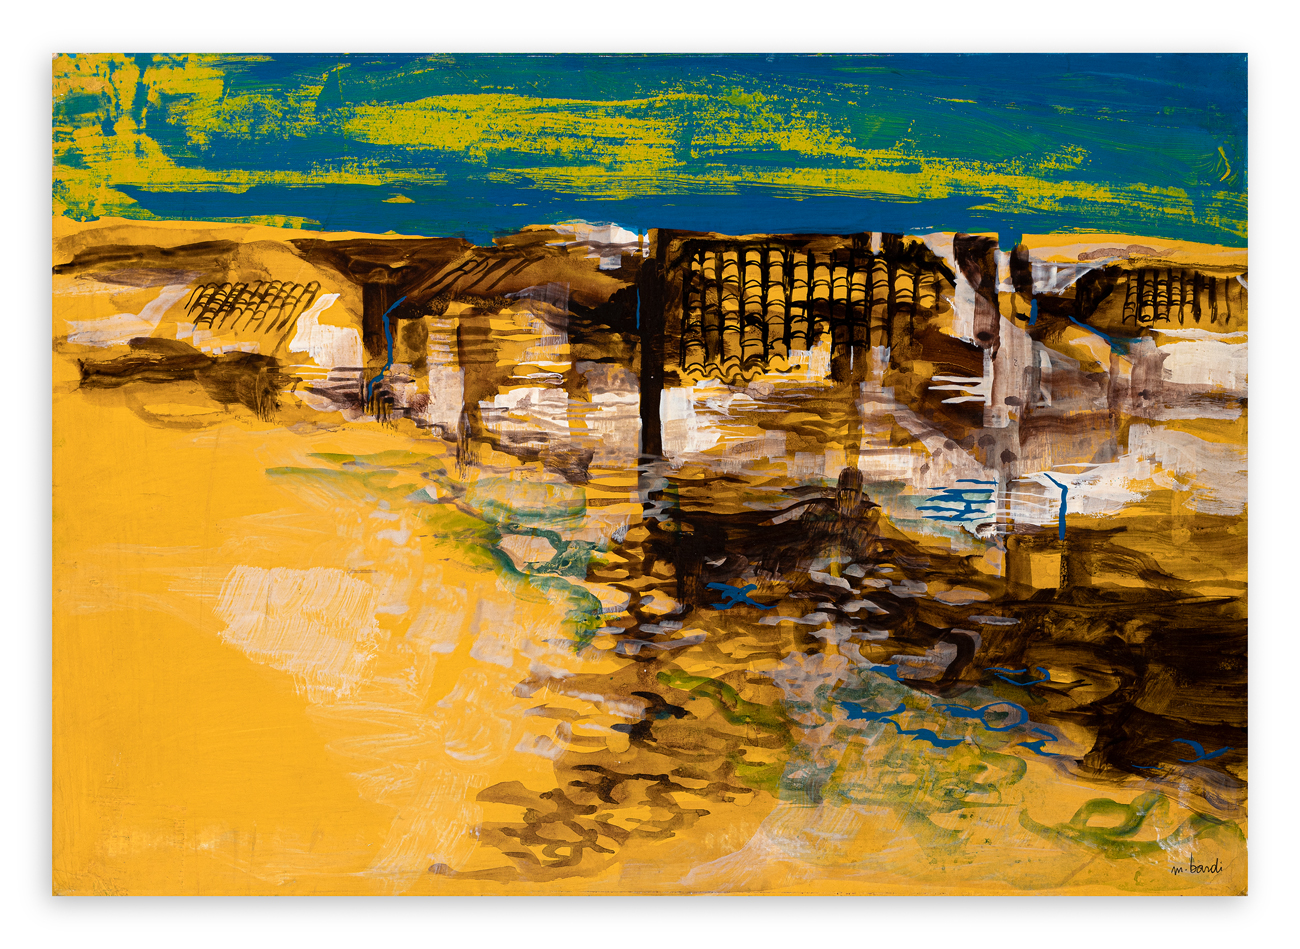 MARIO BARDI (1922-1998) - Paesaggio marino giallo, anni ’70